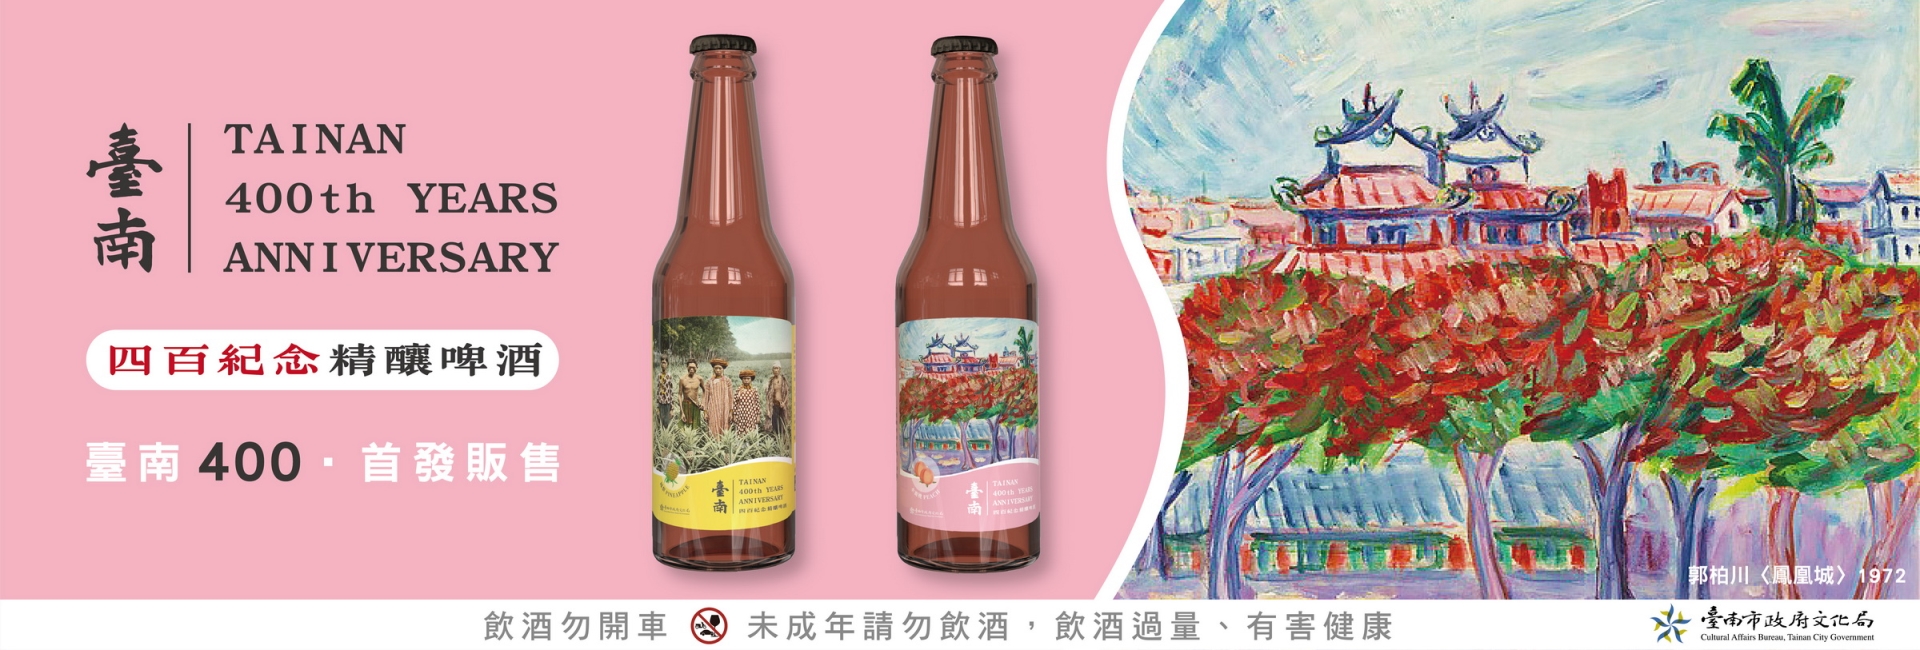 臺南400紀念精釀啤酒 首發上市